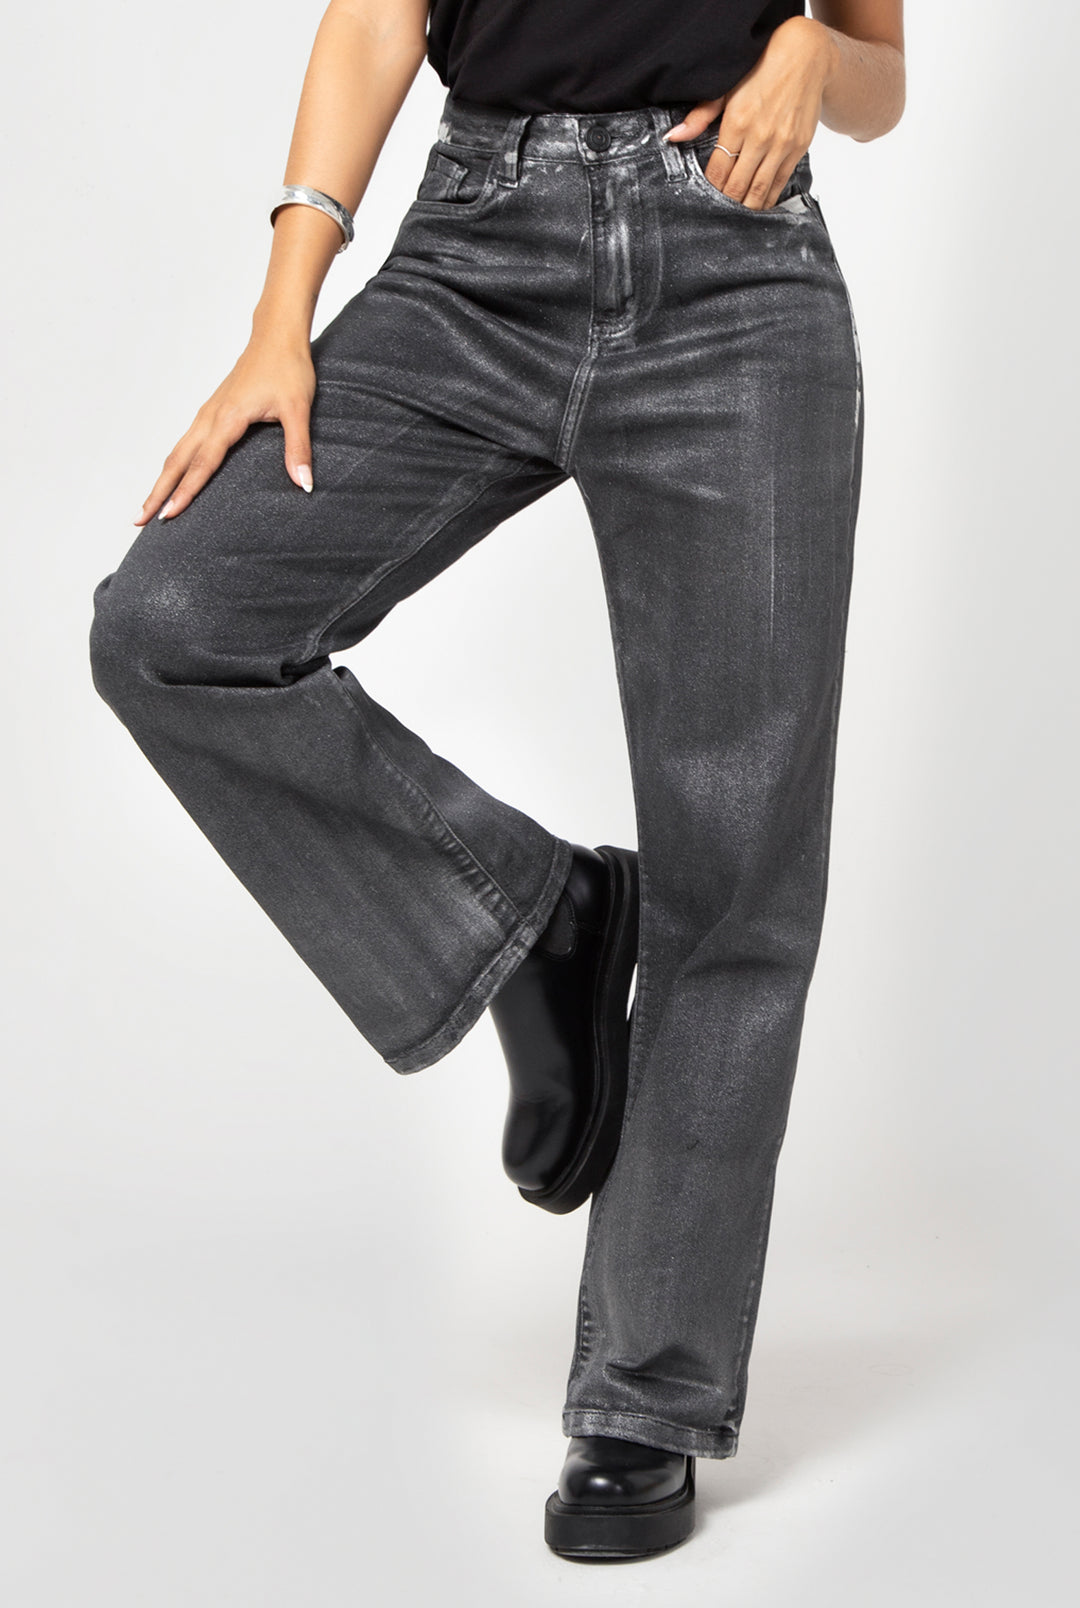 "jeans talla plus" "jeans para mujer tiro alto" "jeans plus size colombia" "jeans levanta cola control abdomen" "pantalones talla plus"